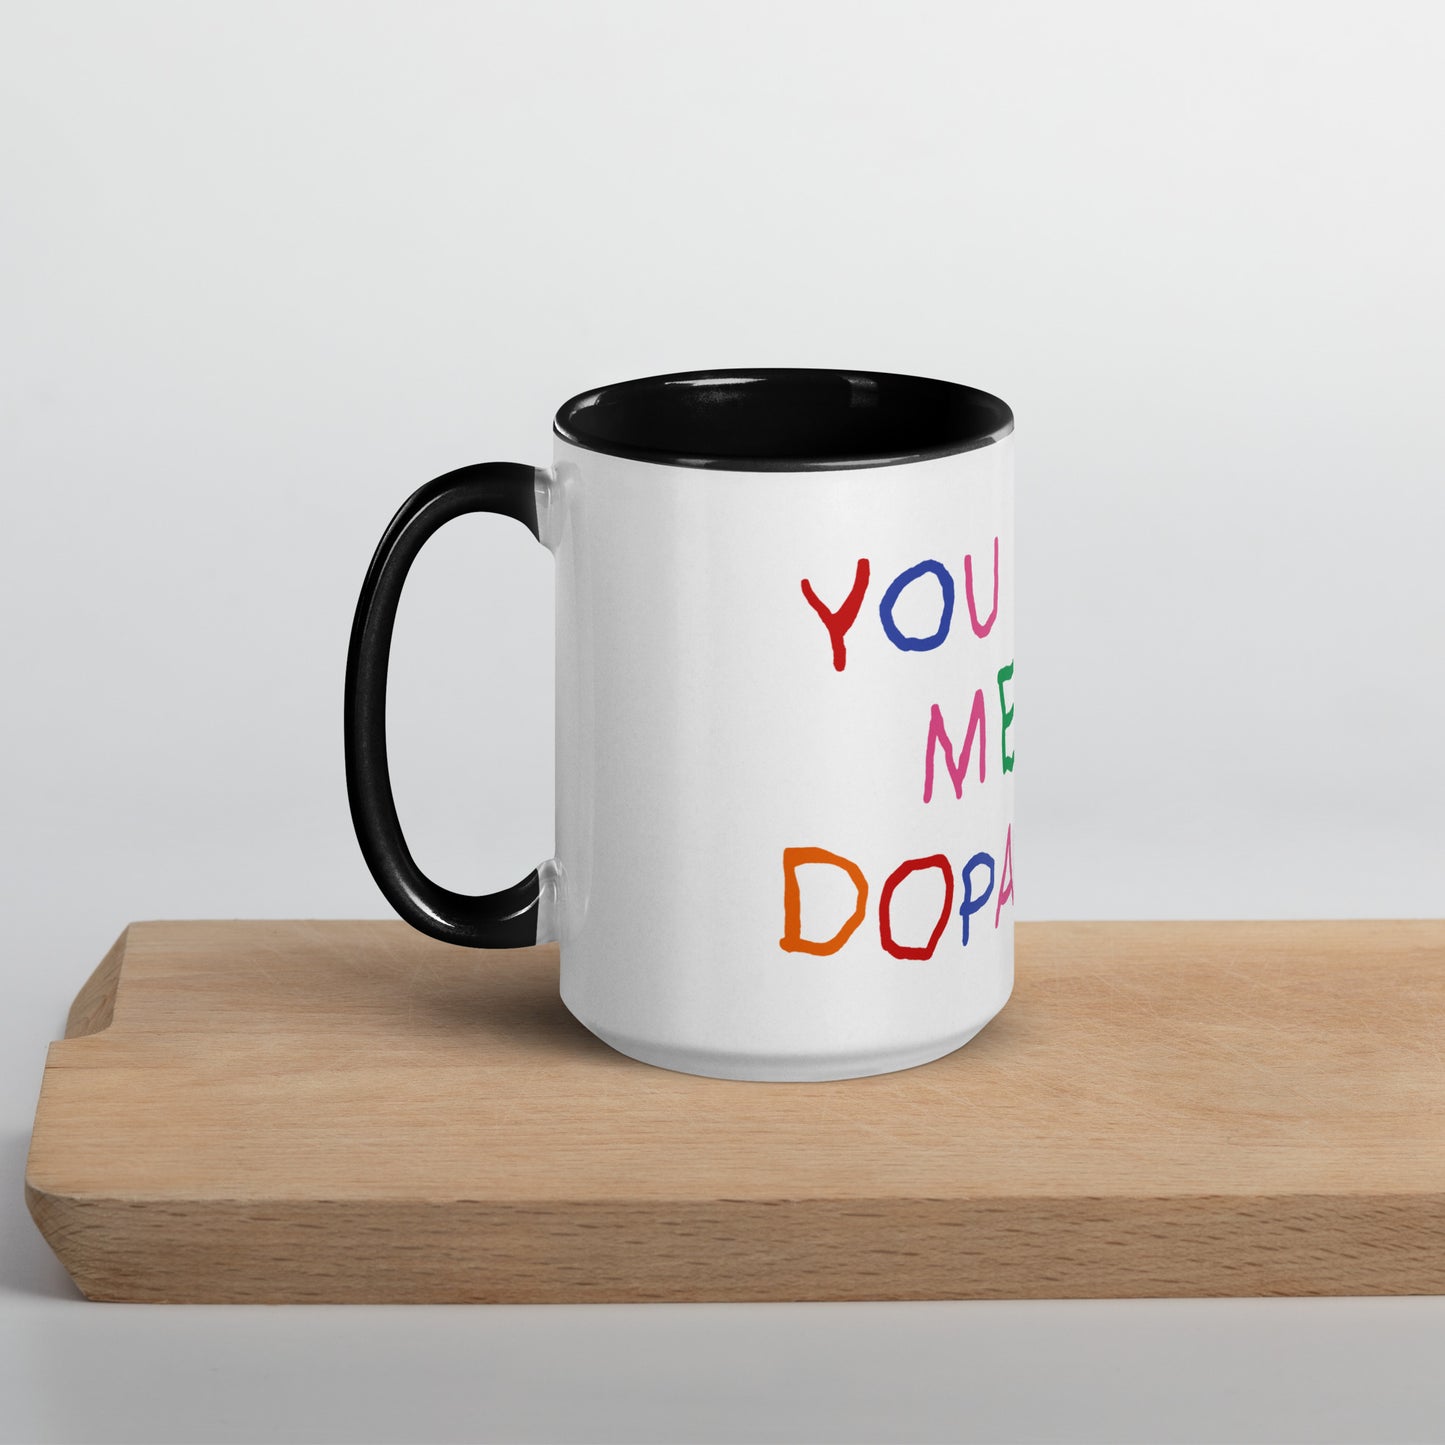 You Give me Dopamine Mug with Color Inside